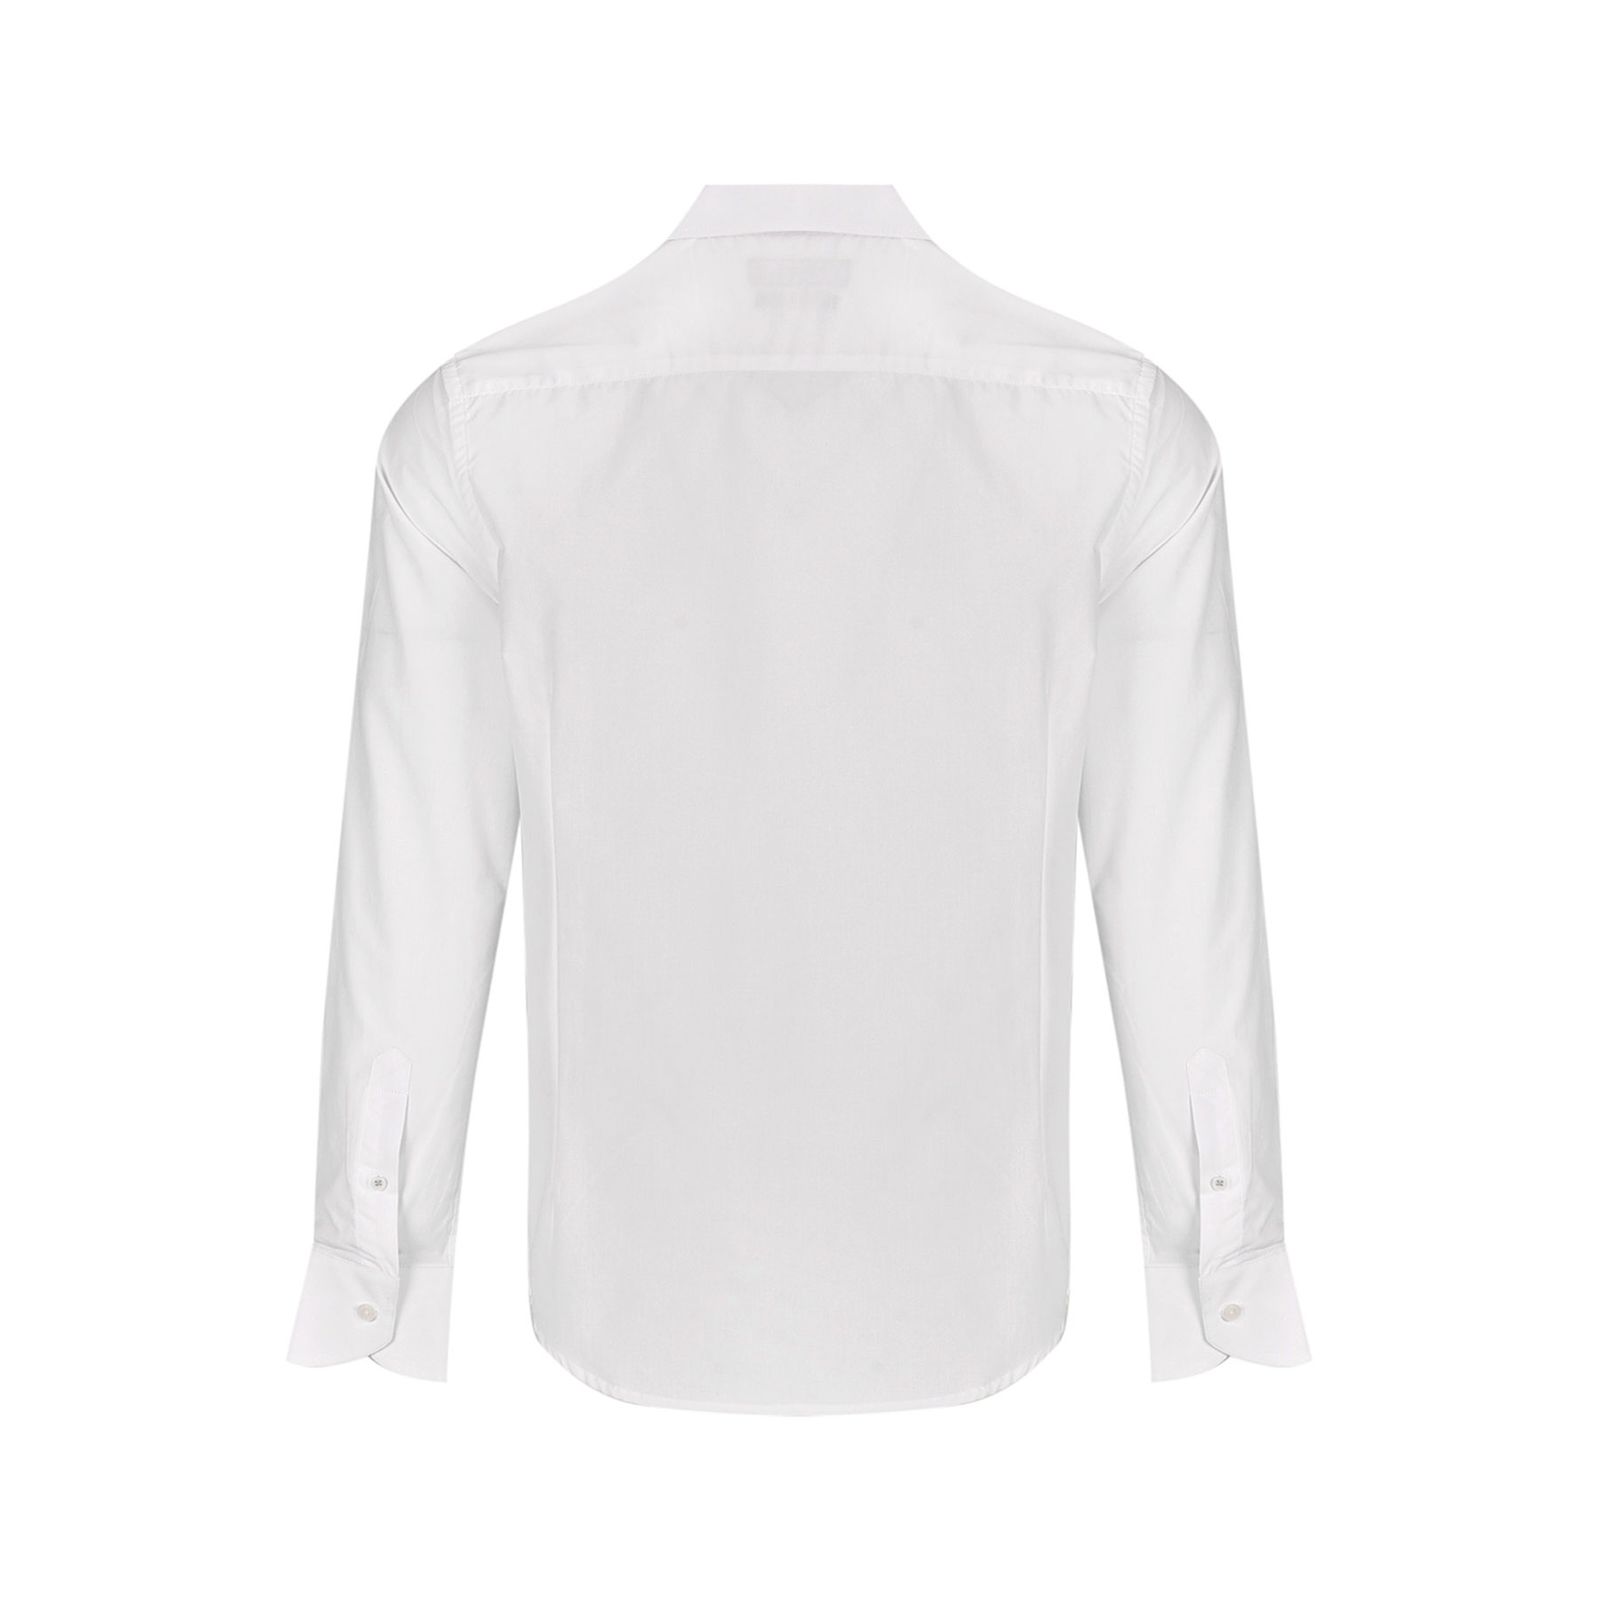 پیراهن آستین بلند مردانه بادی اسپینر مدل 3773 کد 1 رنگ سفید -  - 3